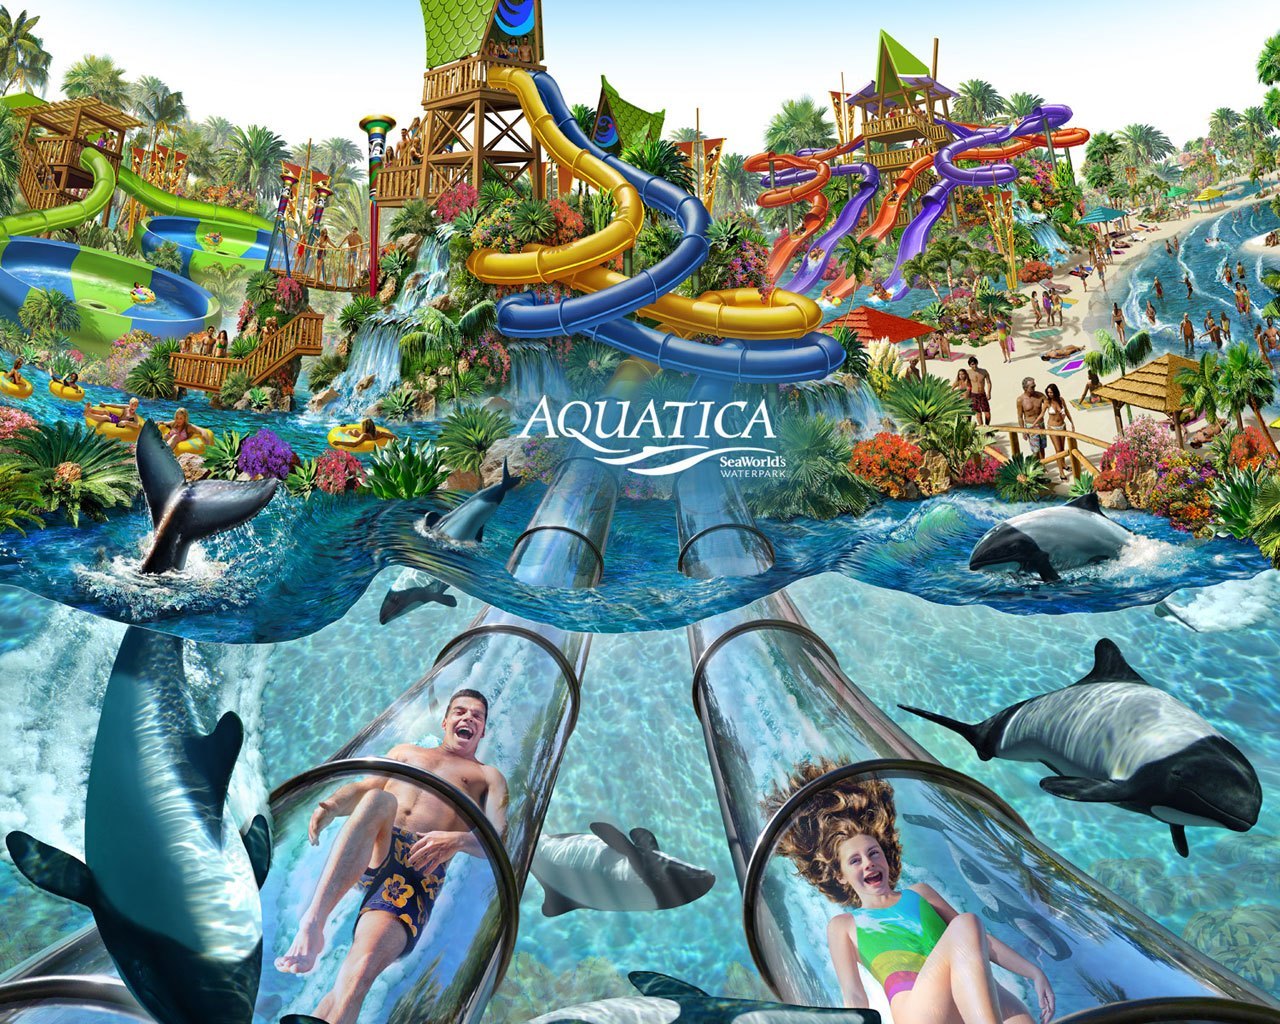 Aquatica Orlando Florida - Parque Aquatica Orlando , HD Wallpaper & Backgrounds